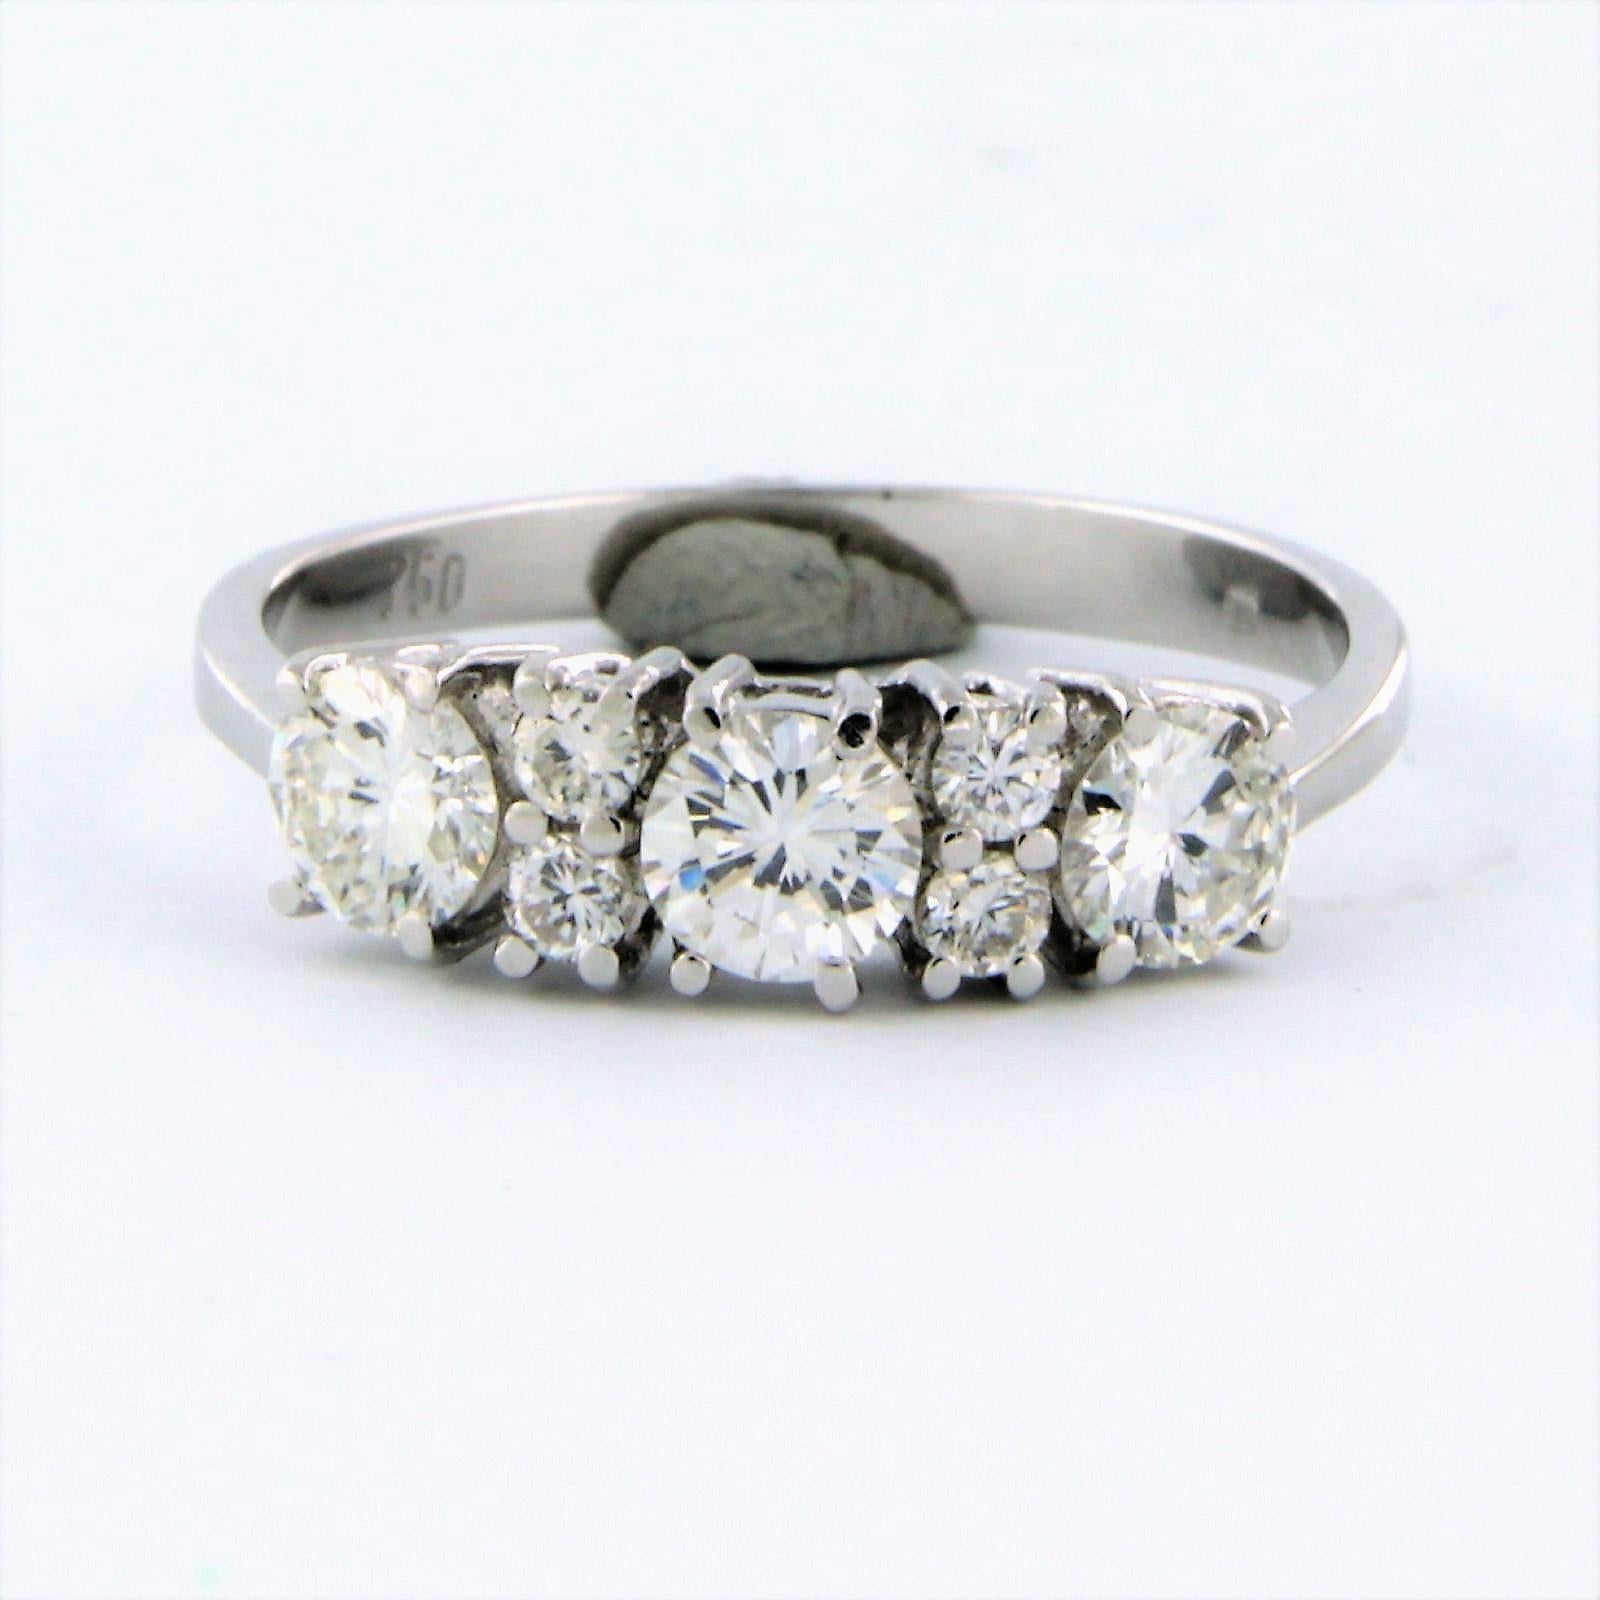 Ring aus 18k Weißgold mit Diamanten im Brillantschliff 1.00 ct - F/G - VS/SI - Ringgröße U.S. 7.25 - EU. 17.5(55)

detaillierte Beschreibung:

die Oberseite des Rings ist 5.2 mm breit

Gewicht 2,5 Gramm

Ringgröße  U.S. 7.25 - EU. 17.5(55), Ring